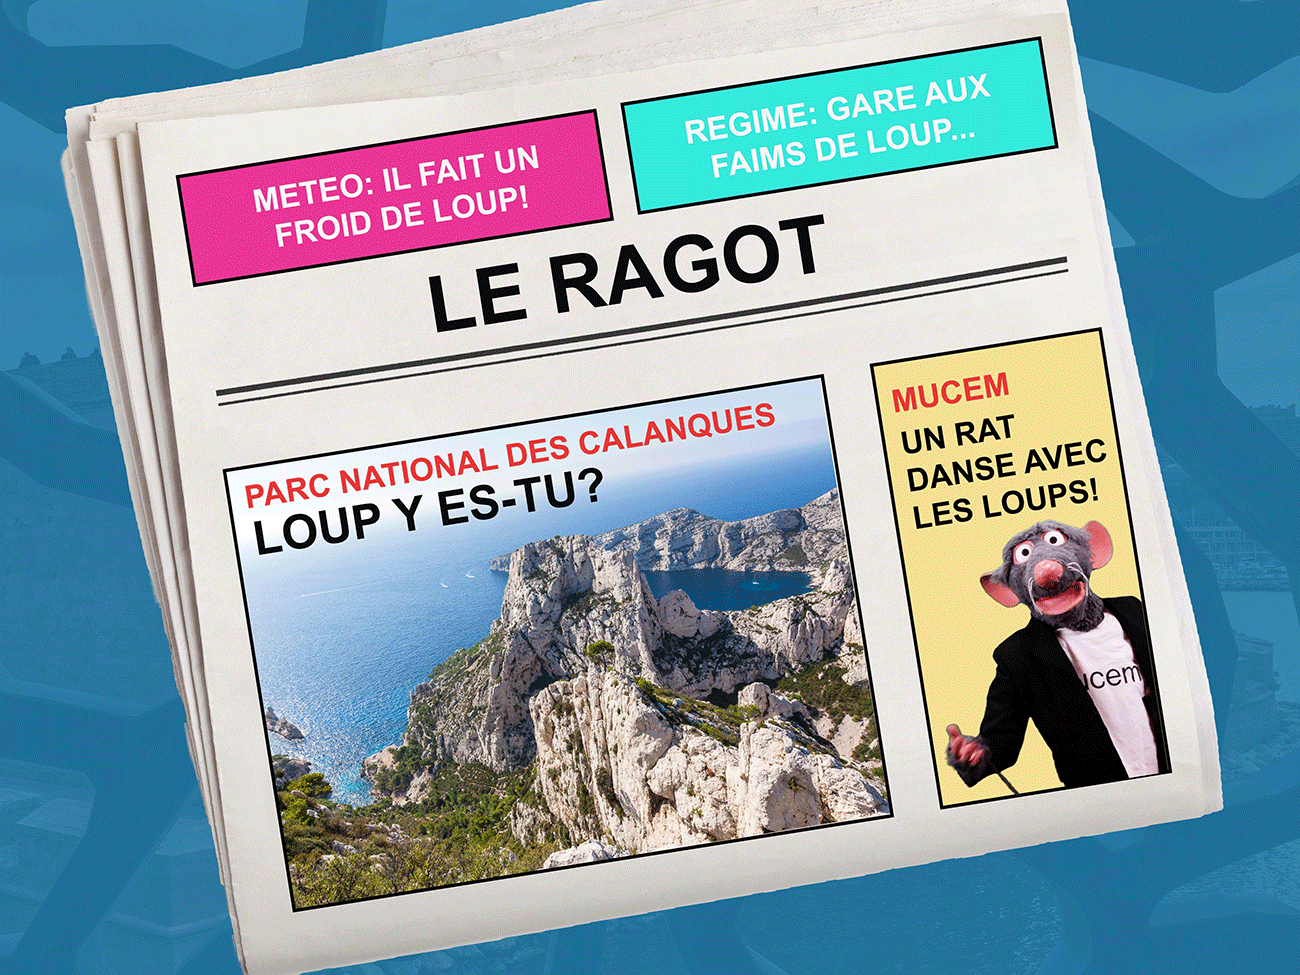 Raoul Lala, Loup y es-tu ? © M@riolab